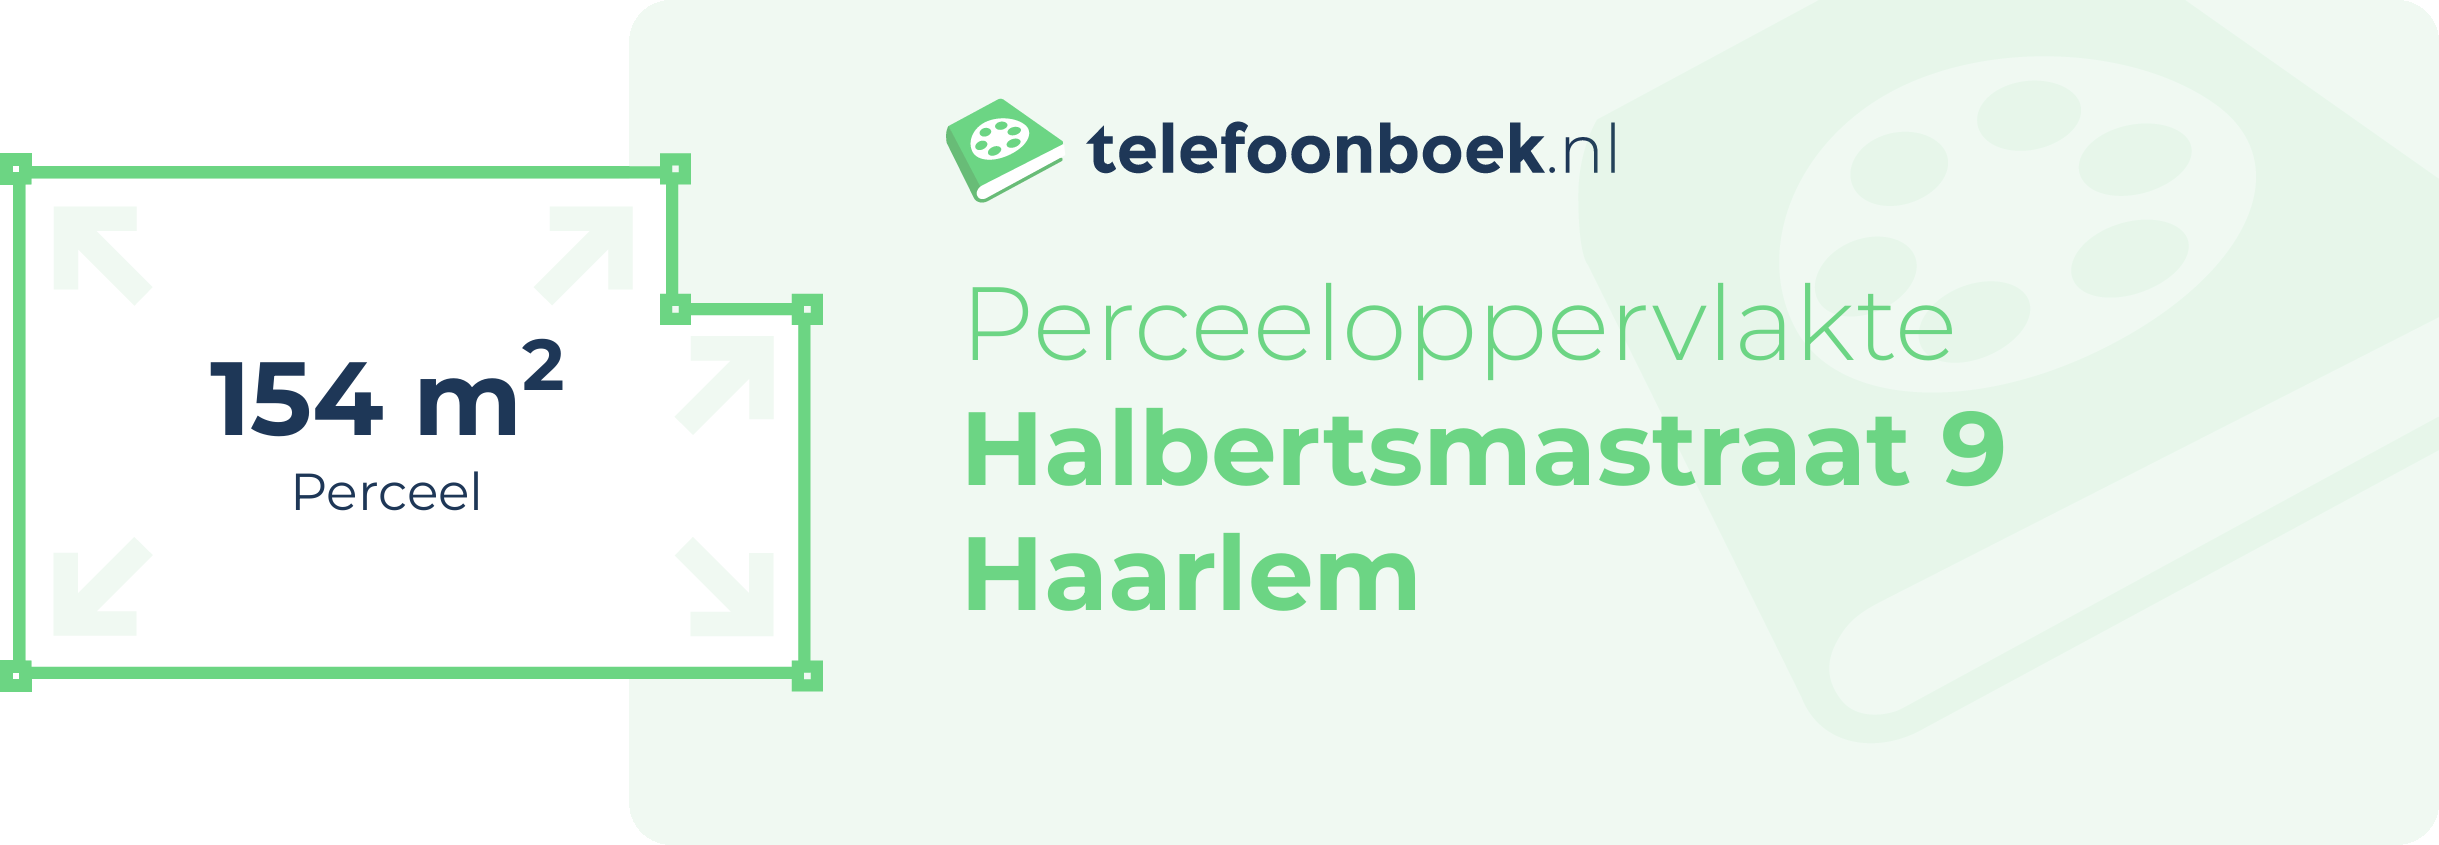 Perceeloppervlakte Halbertsmastraat 9 Haarlem